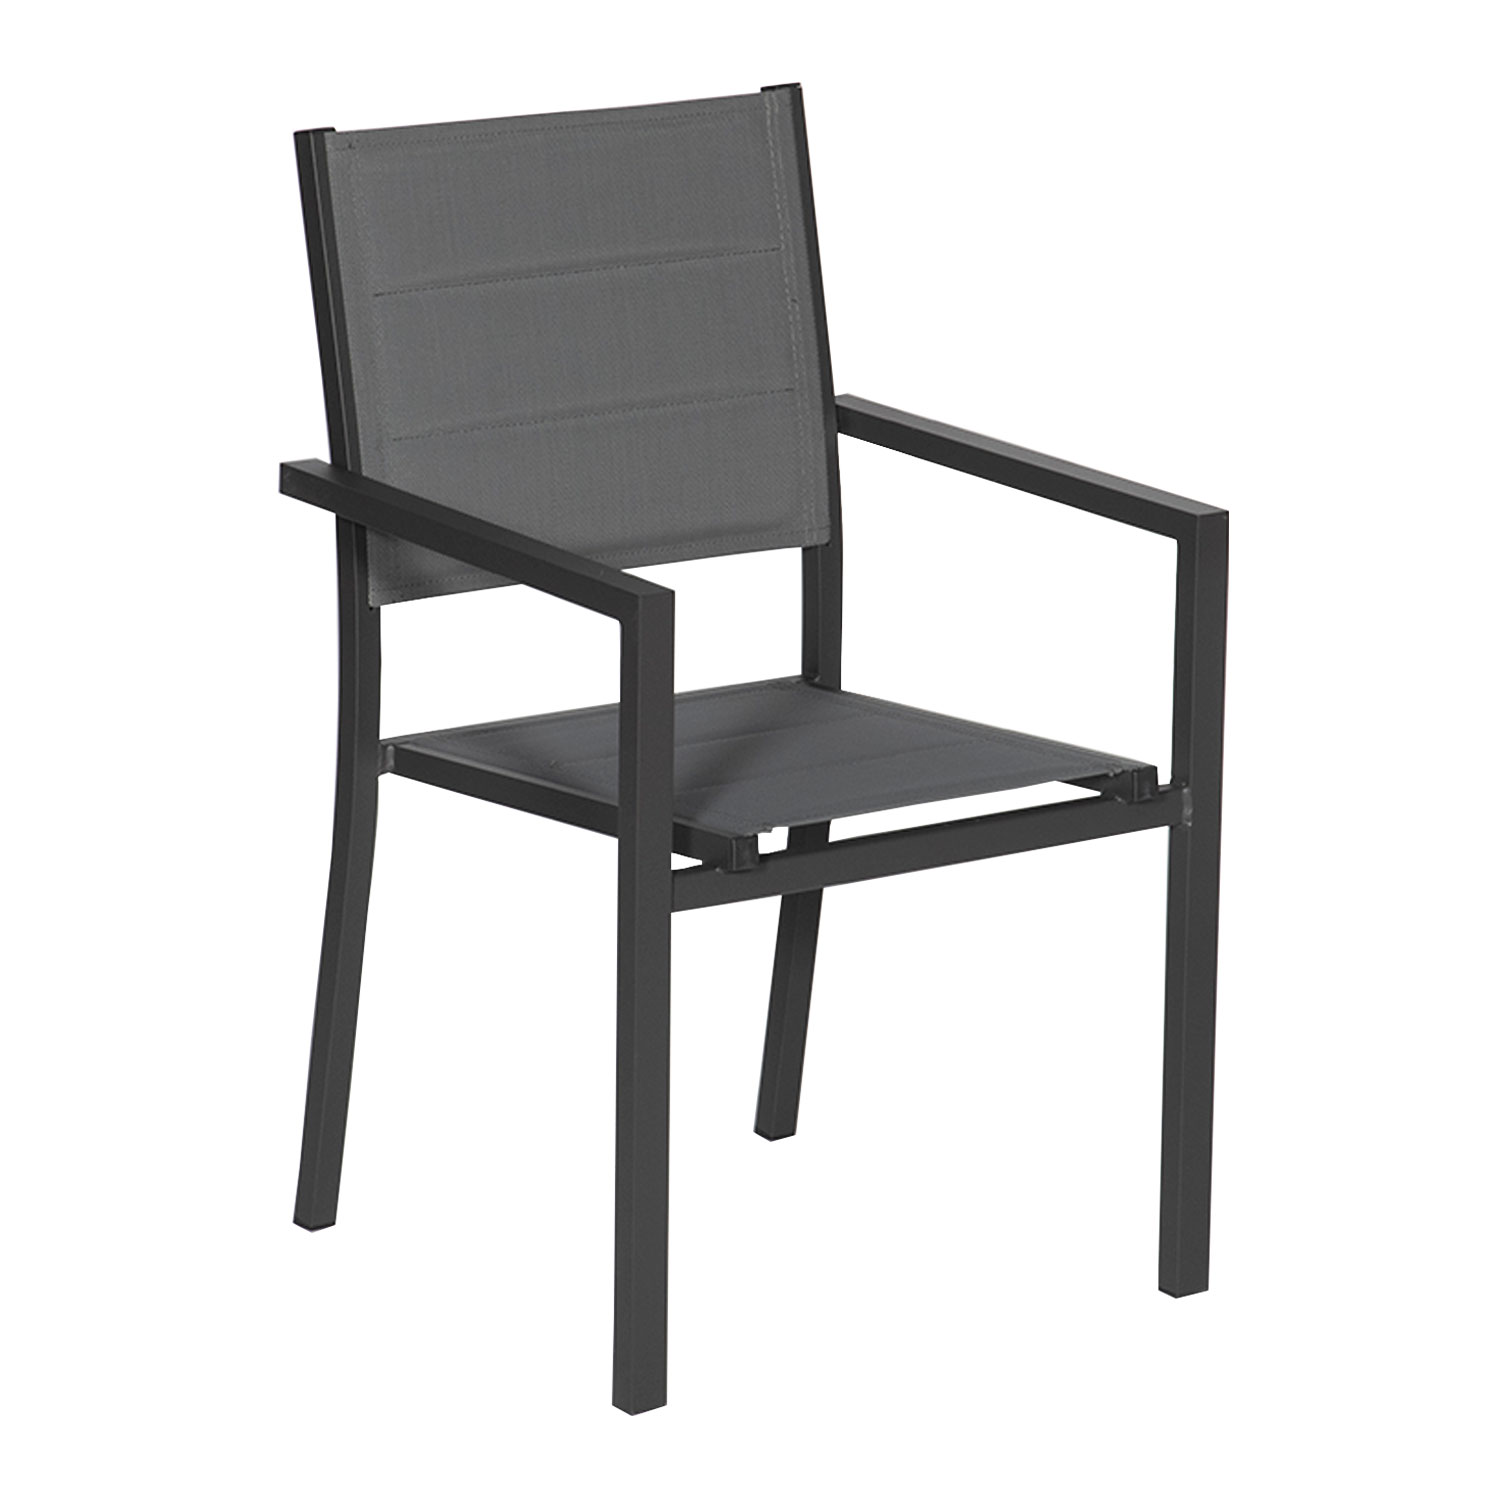 Lot de 4 chaises rembourrées en aluminium anthracite - textilène gris